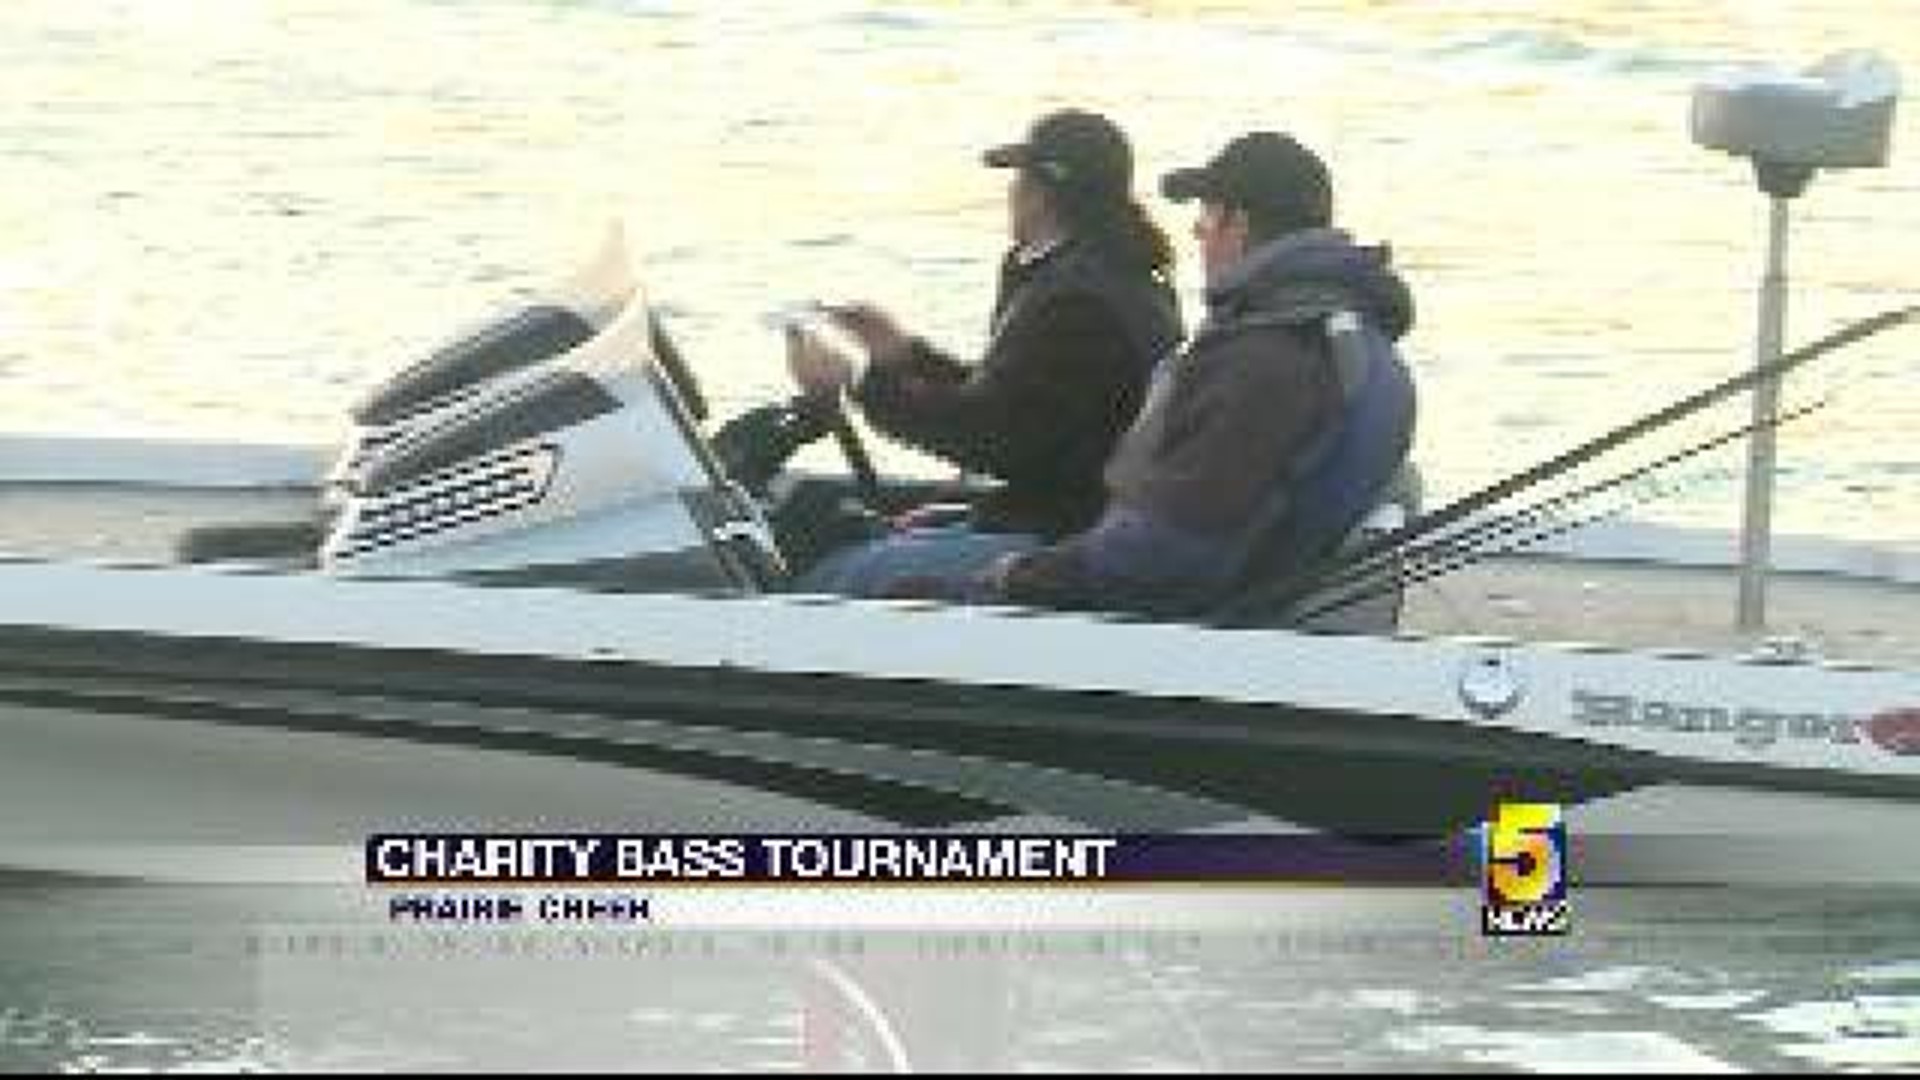 FLW Charity Bass Tournament